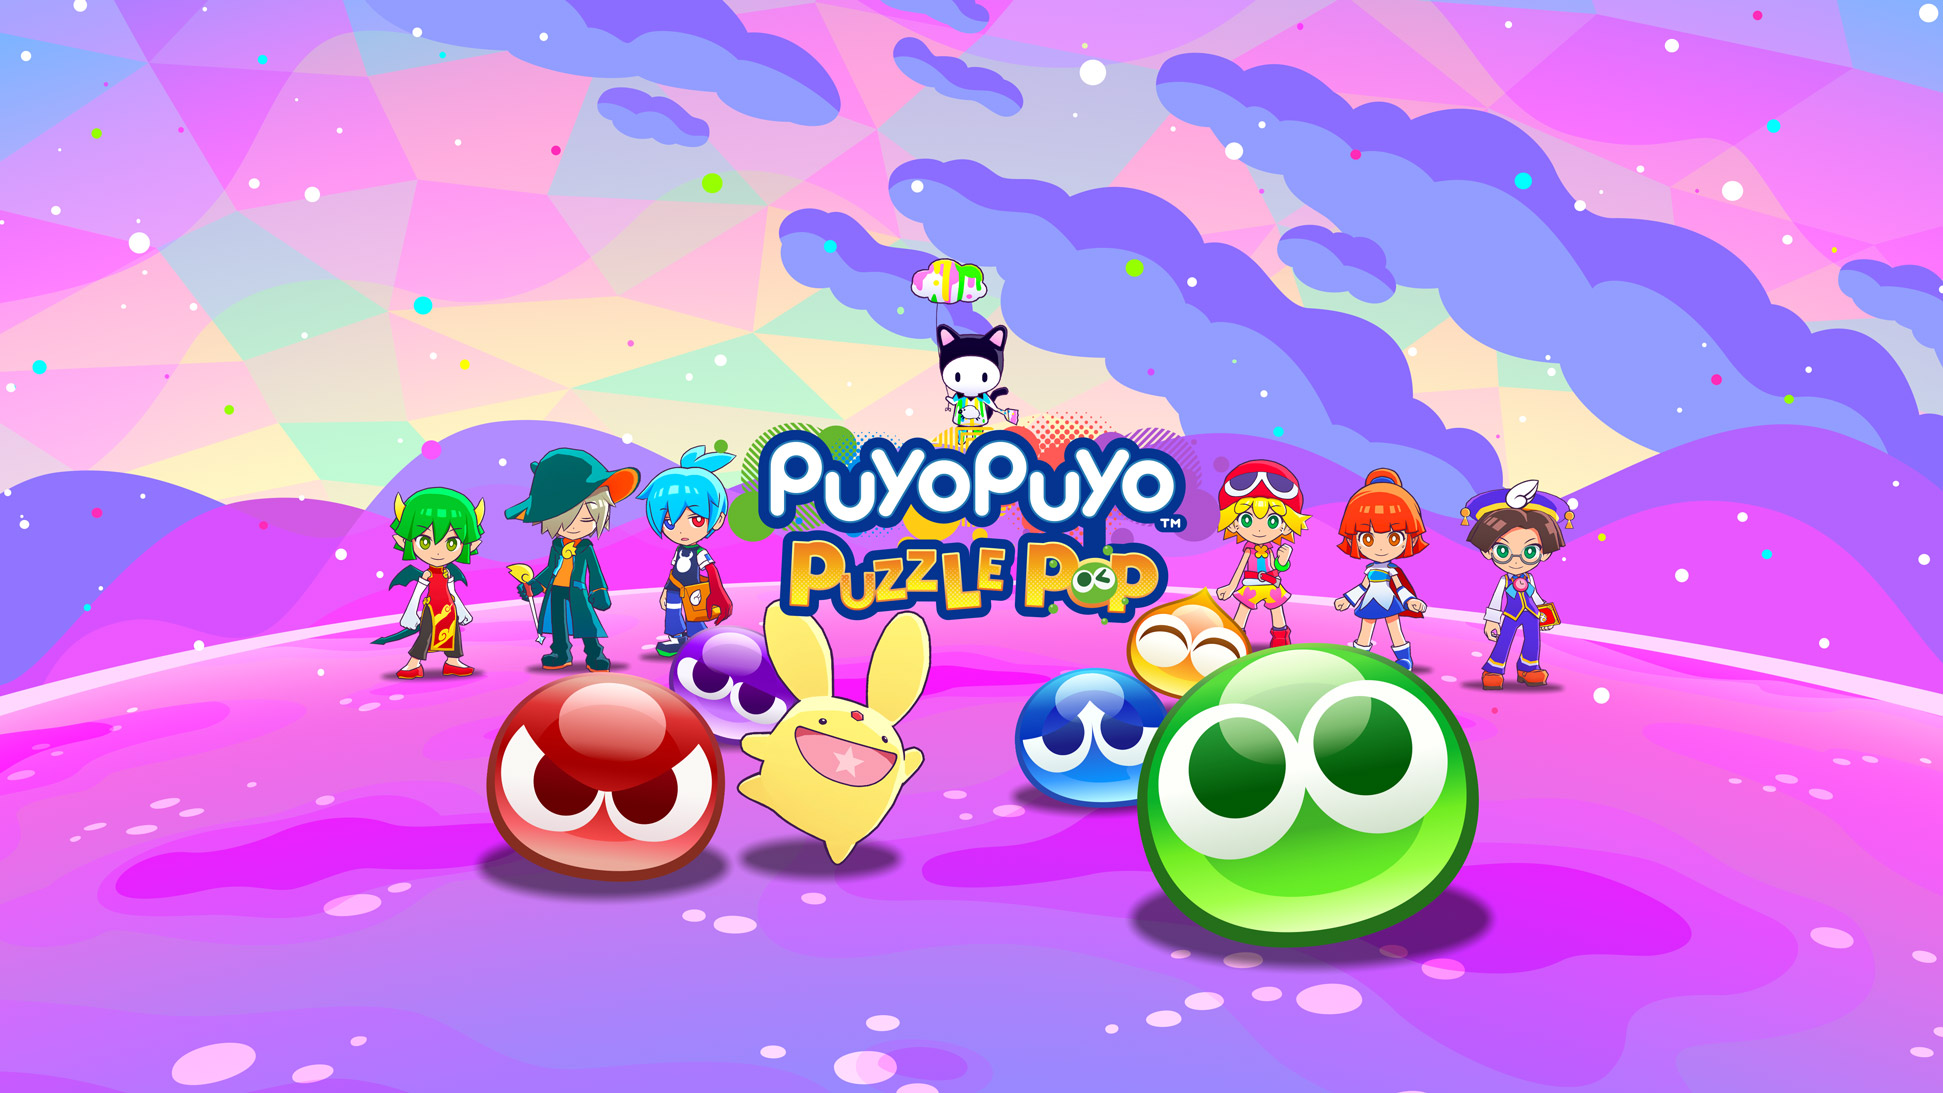 ข่าวดีล่าสุดซีรีส์ Puyo Puyo Puyo Puyo Puzzle Pop จะมาบน Apple Arcade ในวันที่ 4 เมษายน!